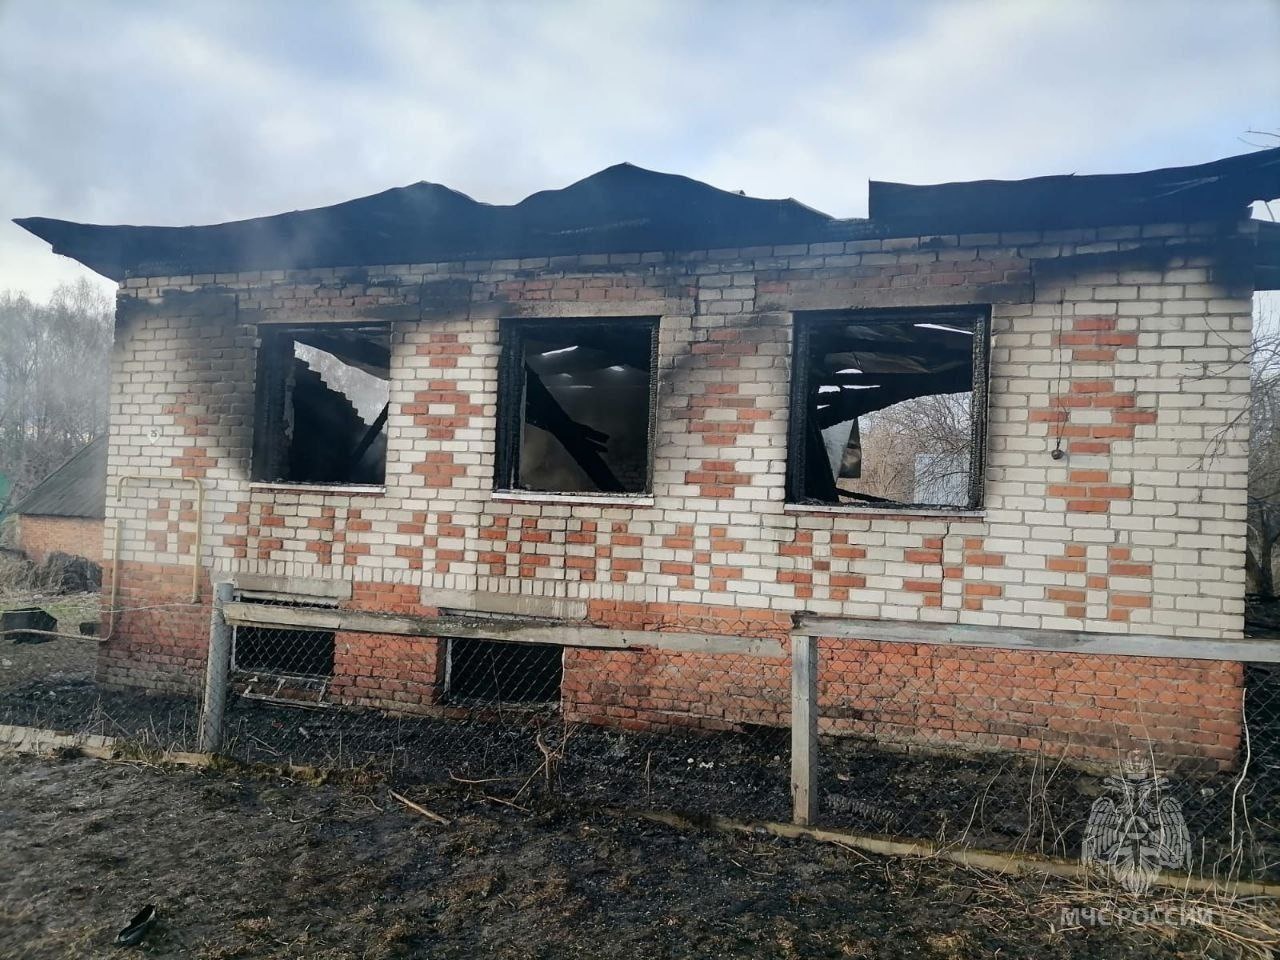 Ночной пожар в Горномарийском районе лишил жизни мужчину